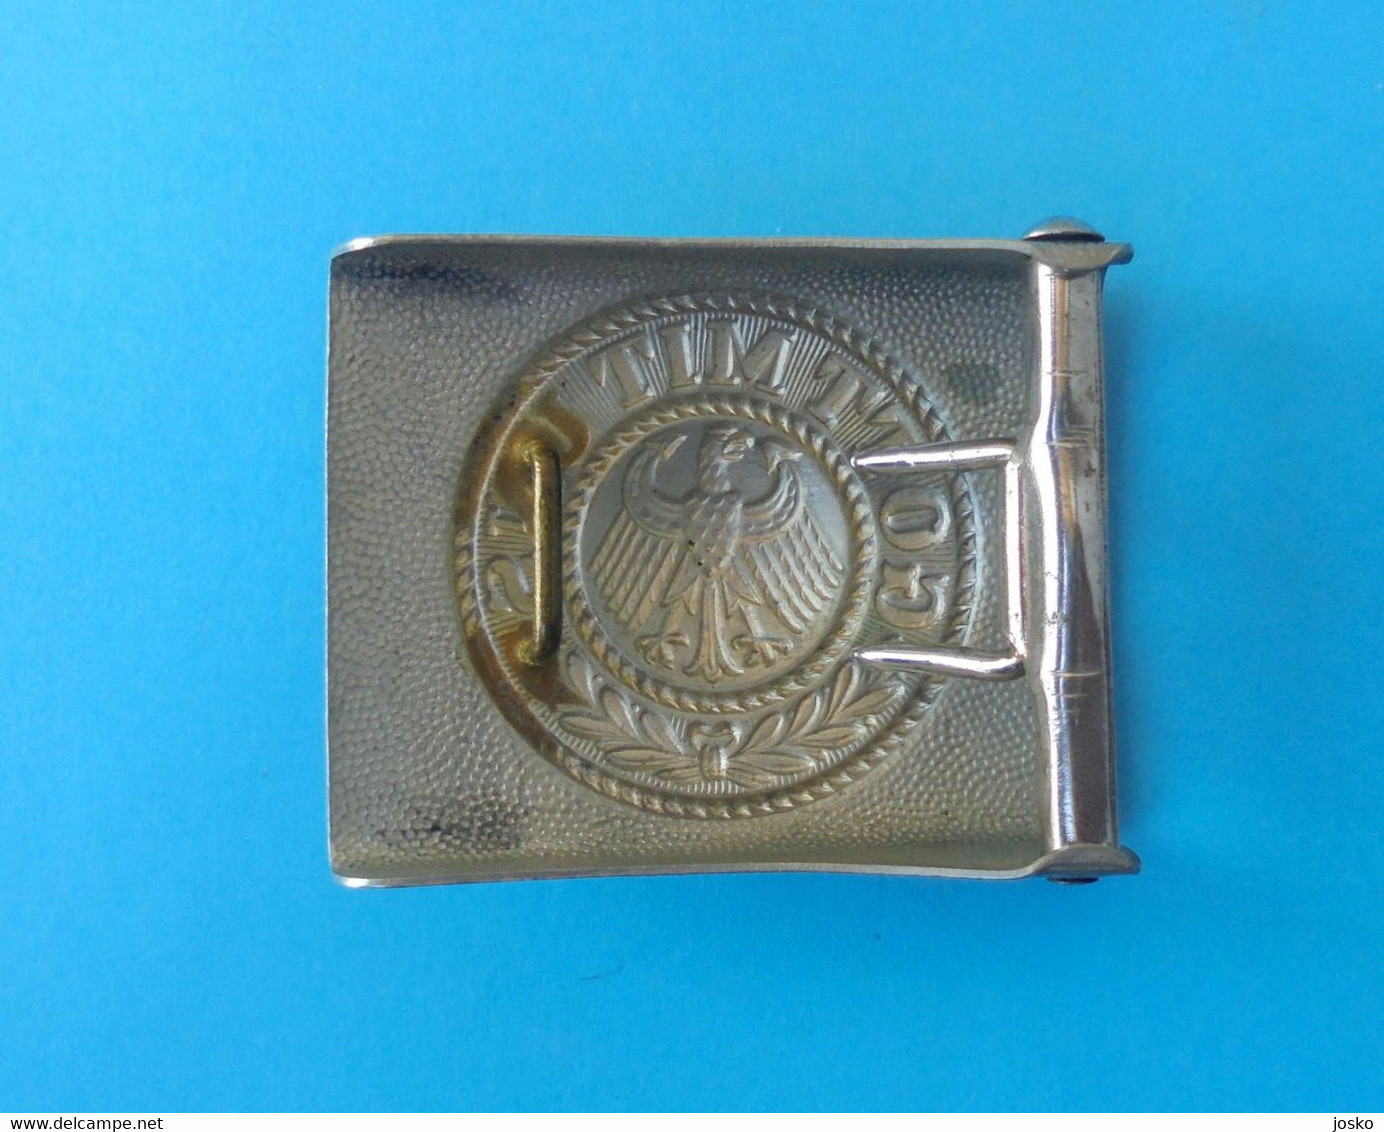 GOTT MIT UNS - German Army Reichswehr Metal Belt Buckle With Eagle (adler) * Deutschland Armee Boucle De Ceinture - 1939-45